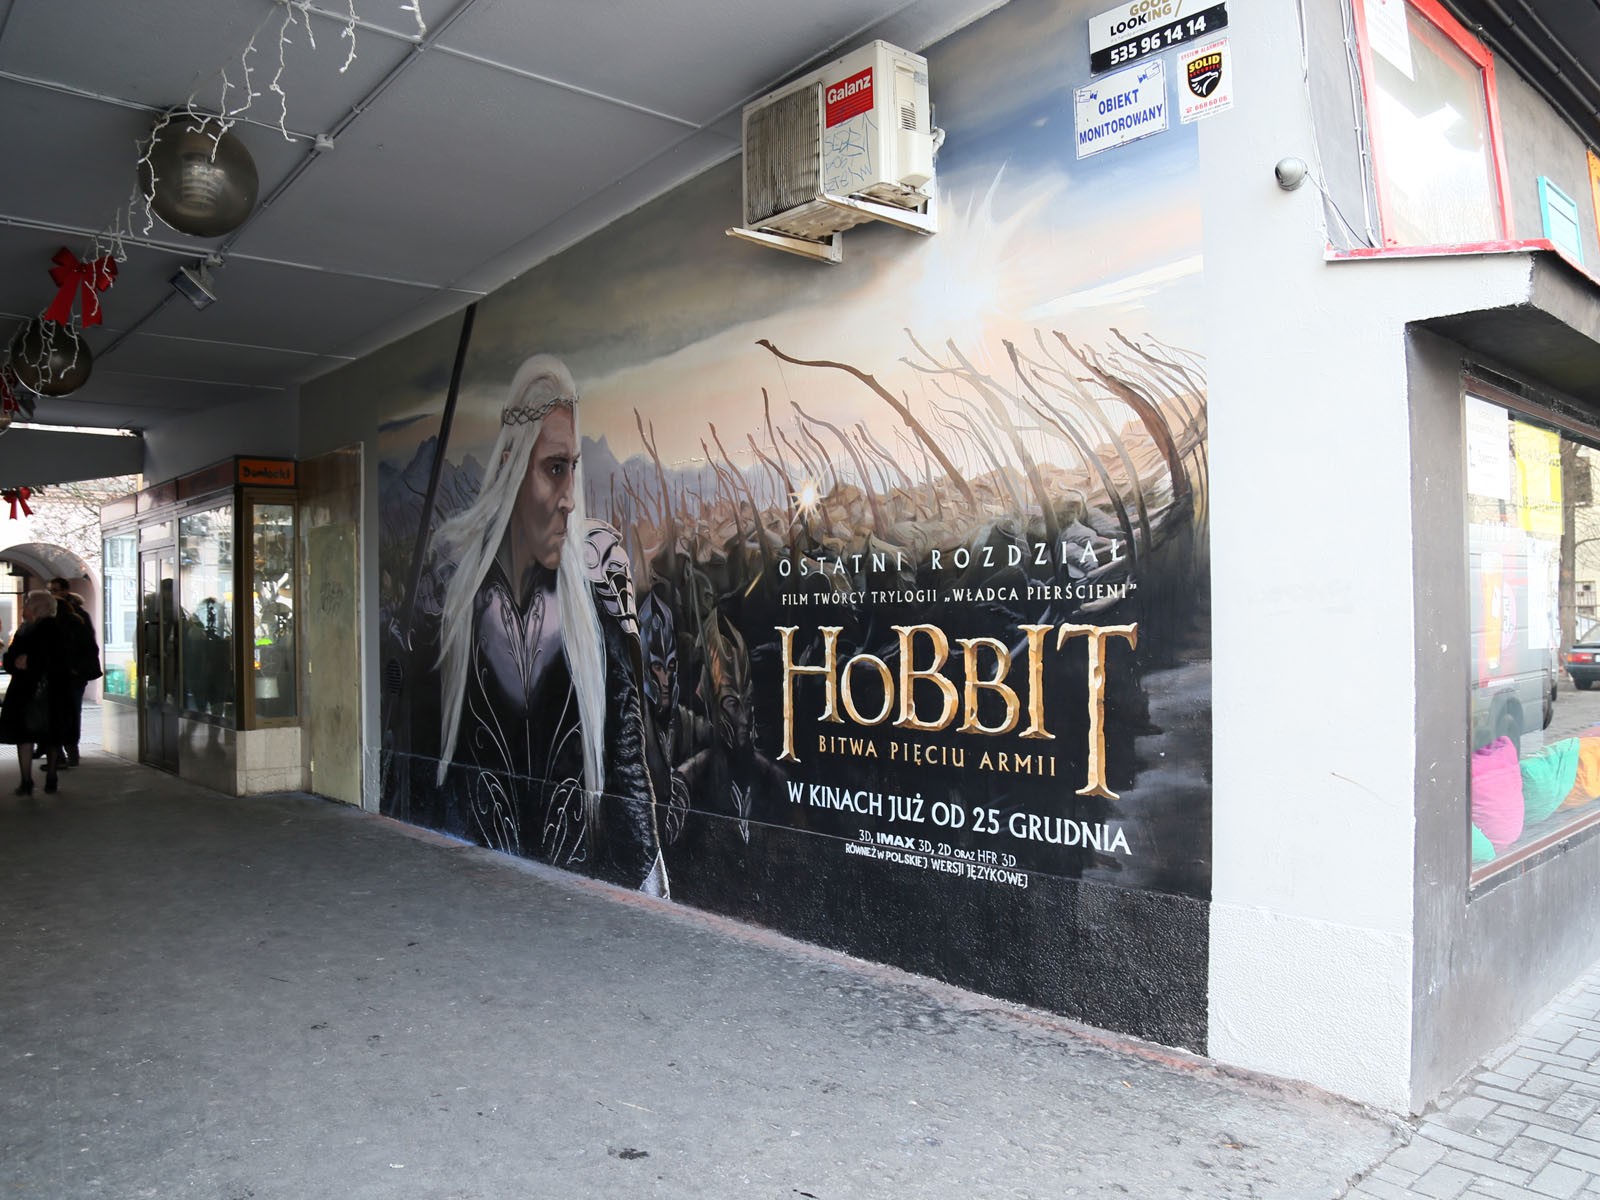 Warszawa Pawilony Centrum Nowy Świat Hobbit Bitwa Pięciu Armii pomalowana powierzchnia | Mural reklamujący film Hobbit dla Forum Films | Portfolio